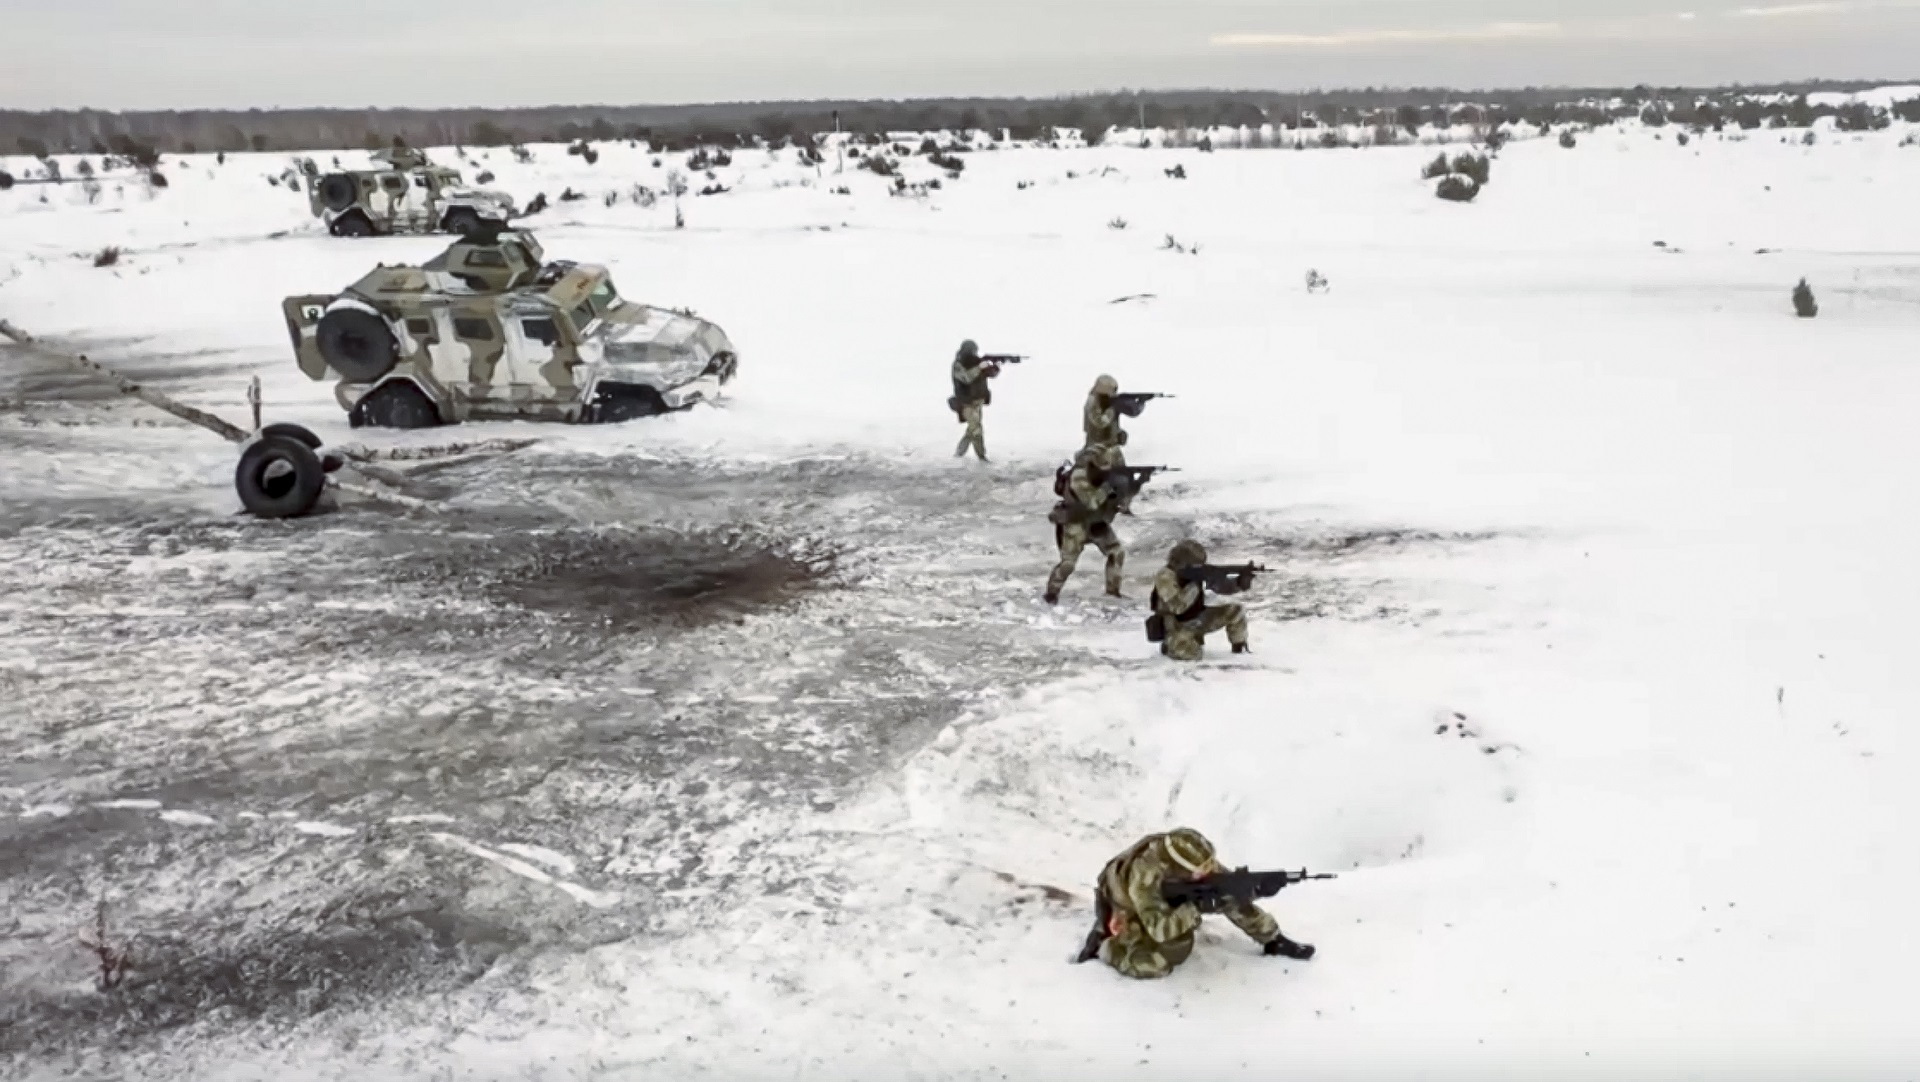 Tropas rusas participan en ejercicios en un lugar no especificado de Bielorrusia. (Servicio de Prensa del Ministerio de Defensa ruso vía AP)